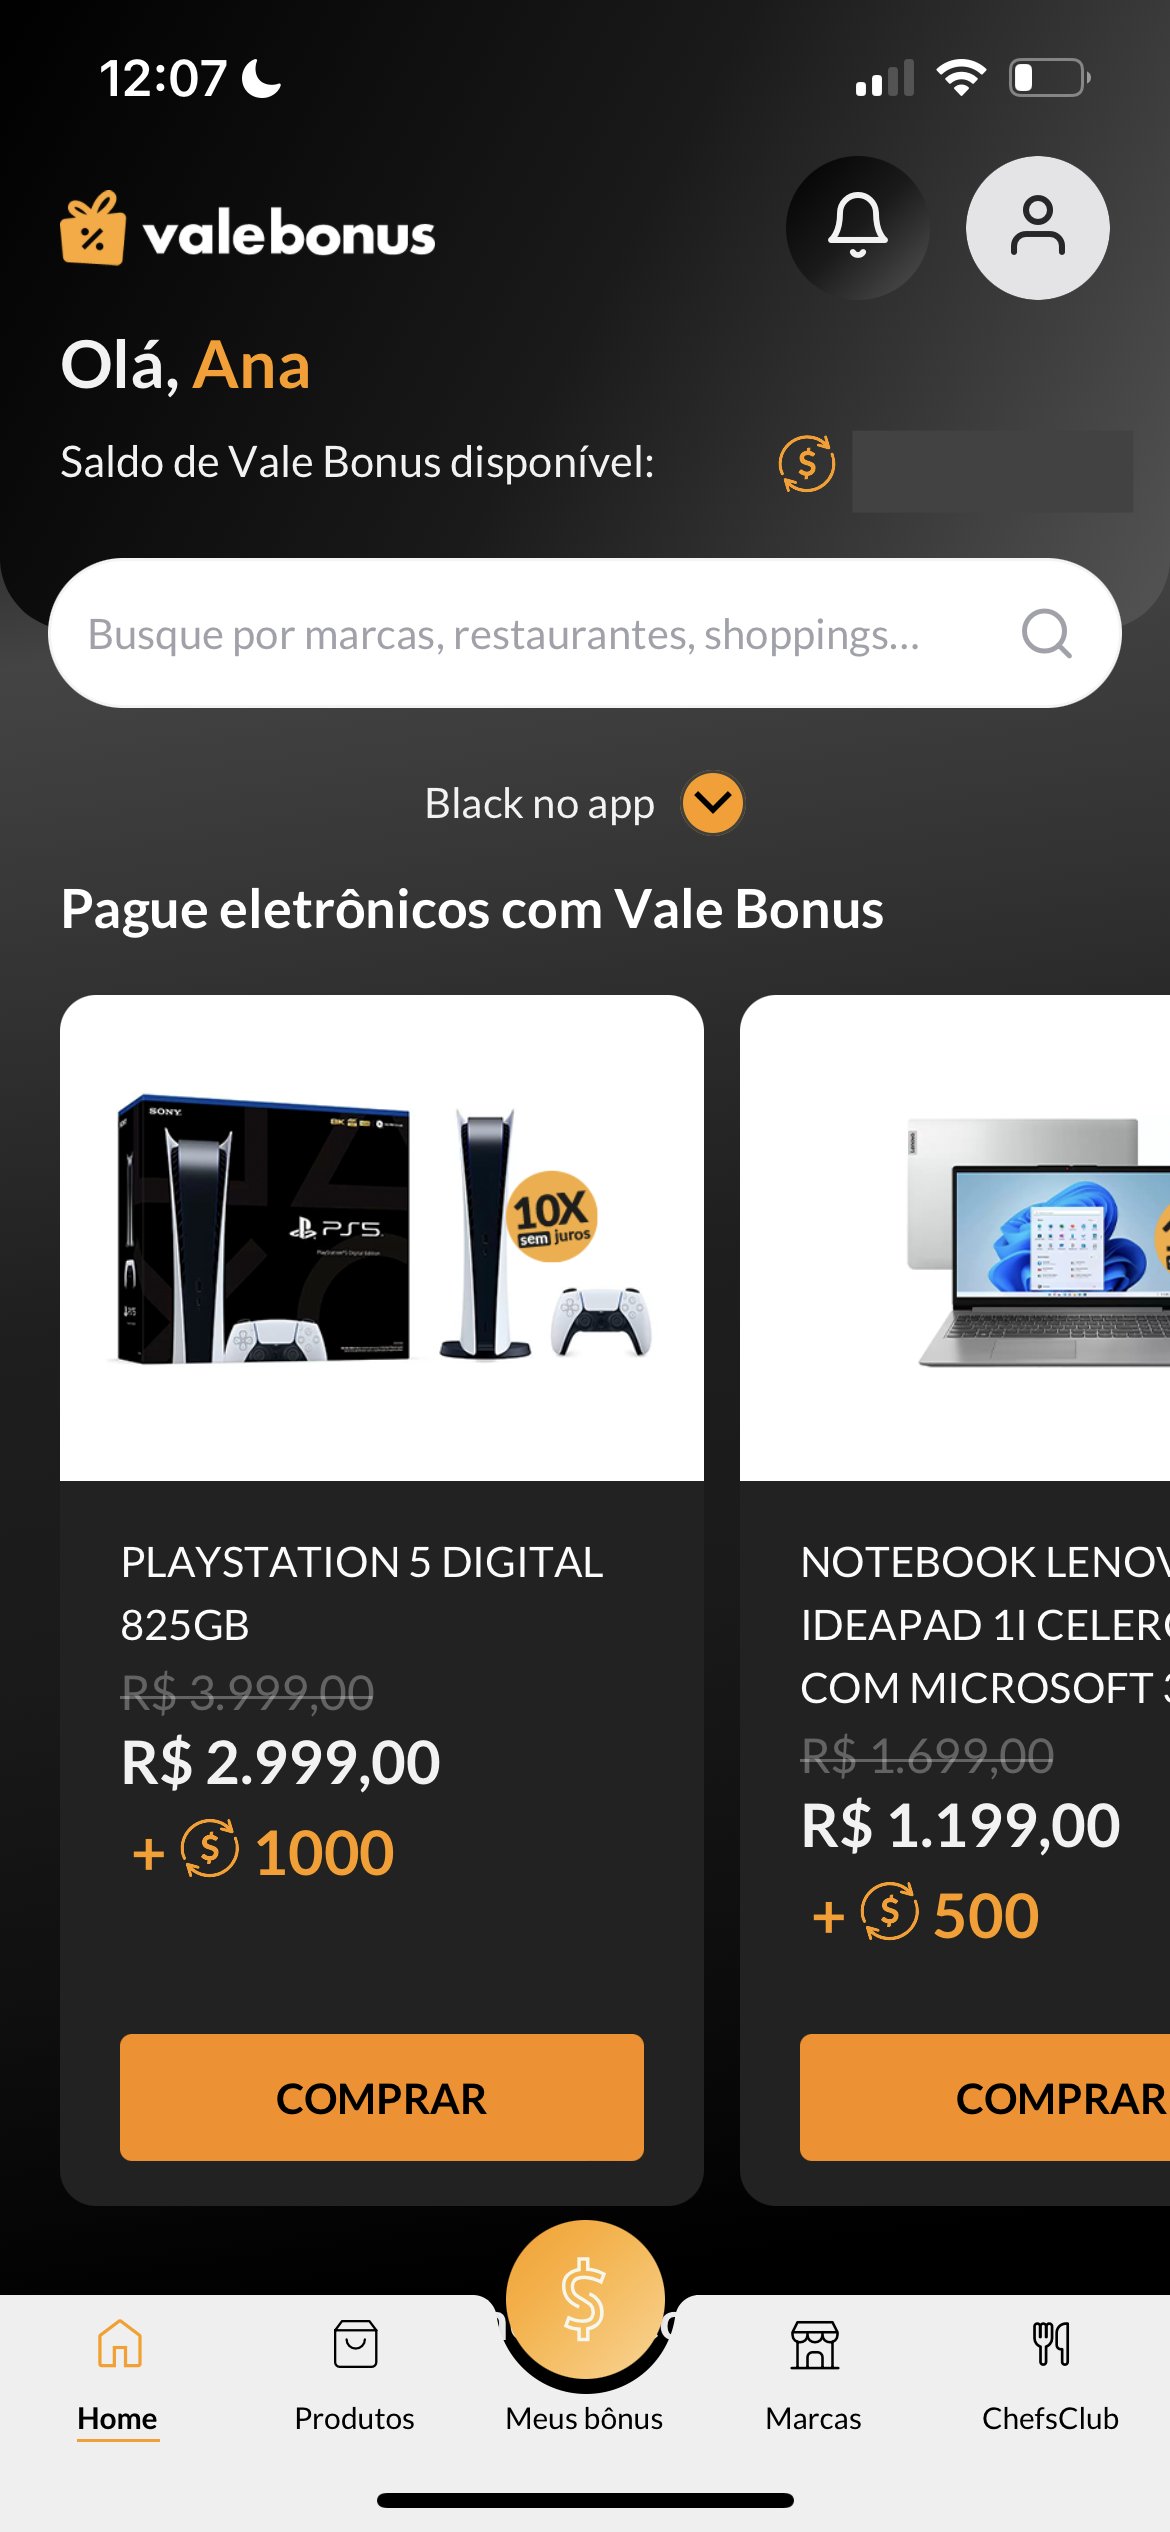 Promoção da PlayStation garante R$ 500 de desconto no PS5